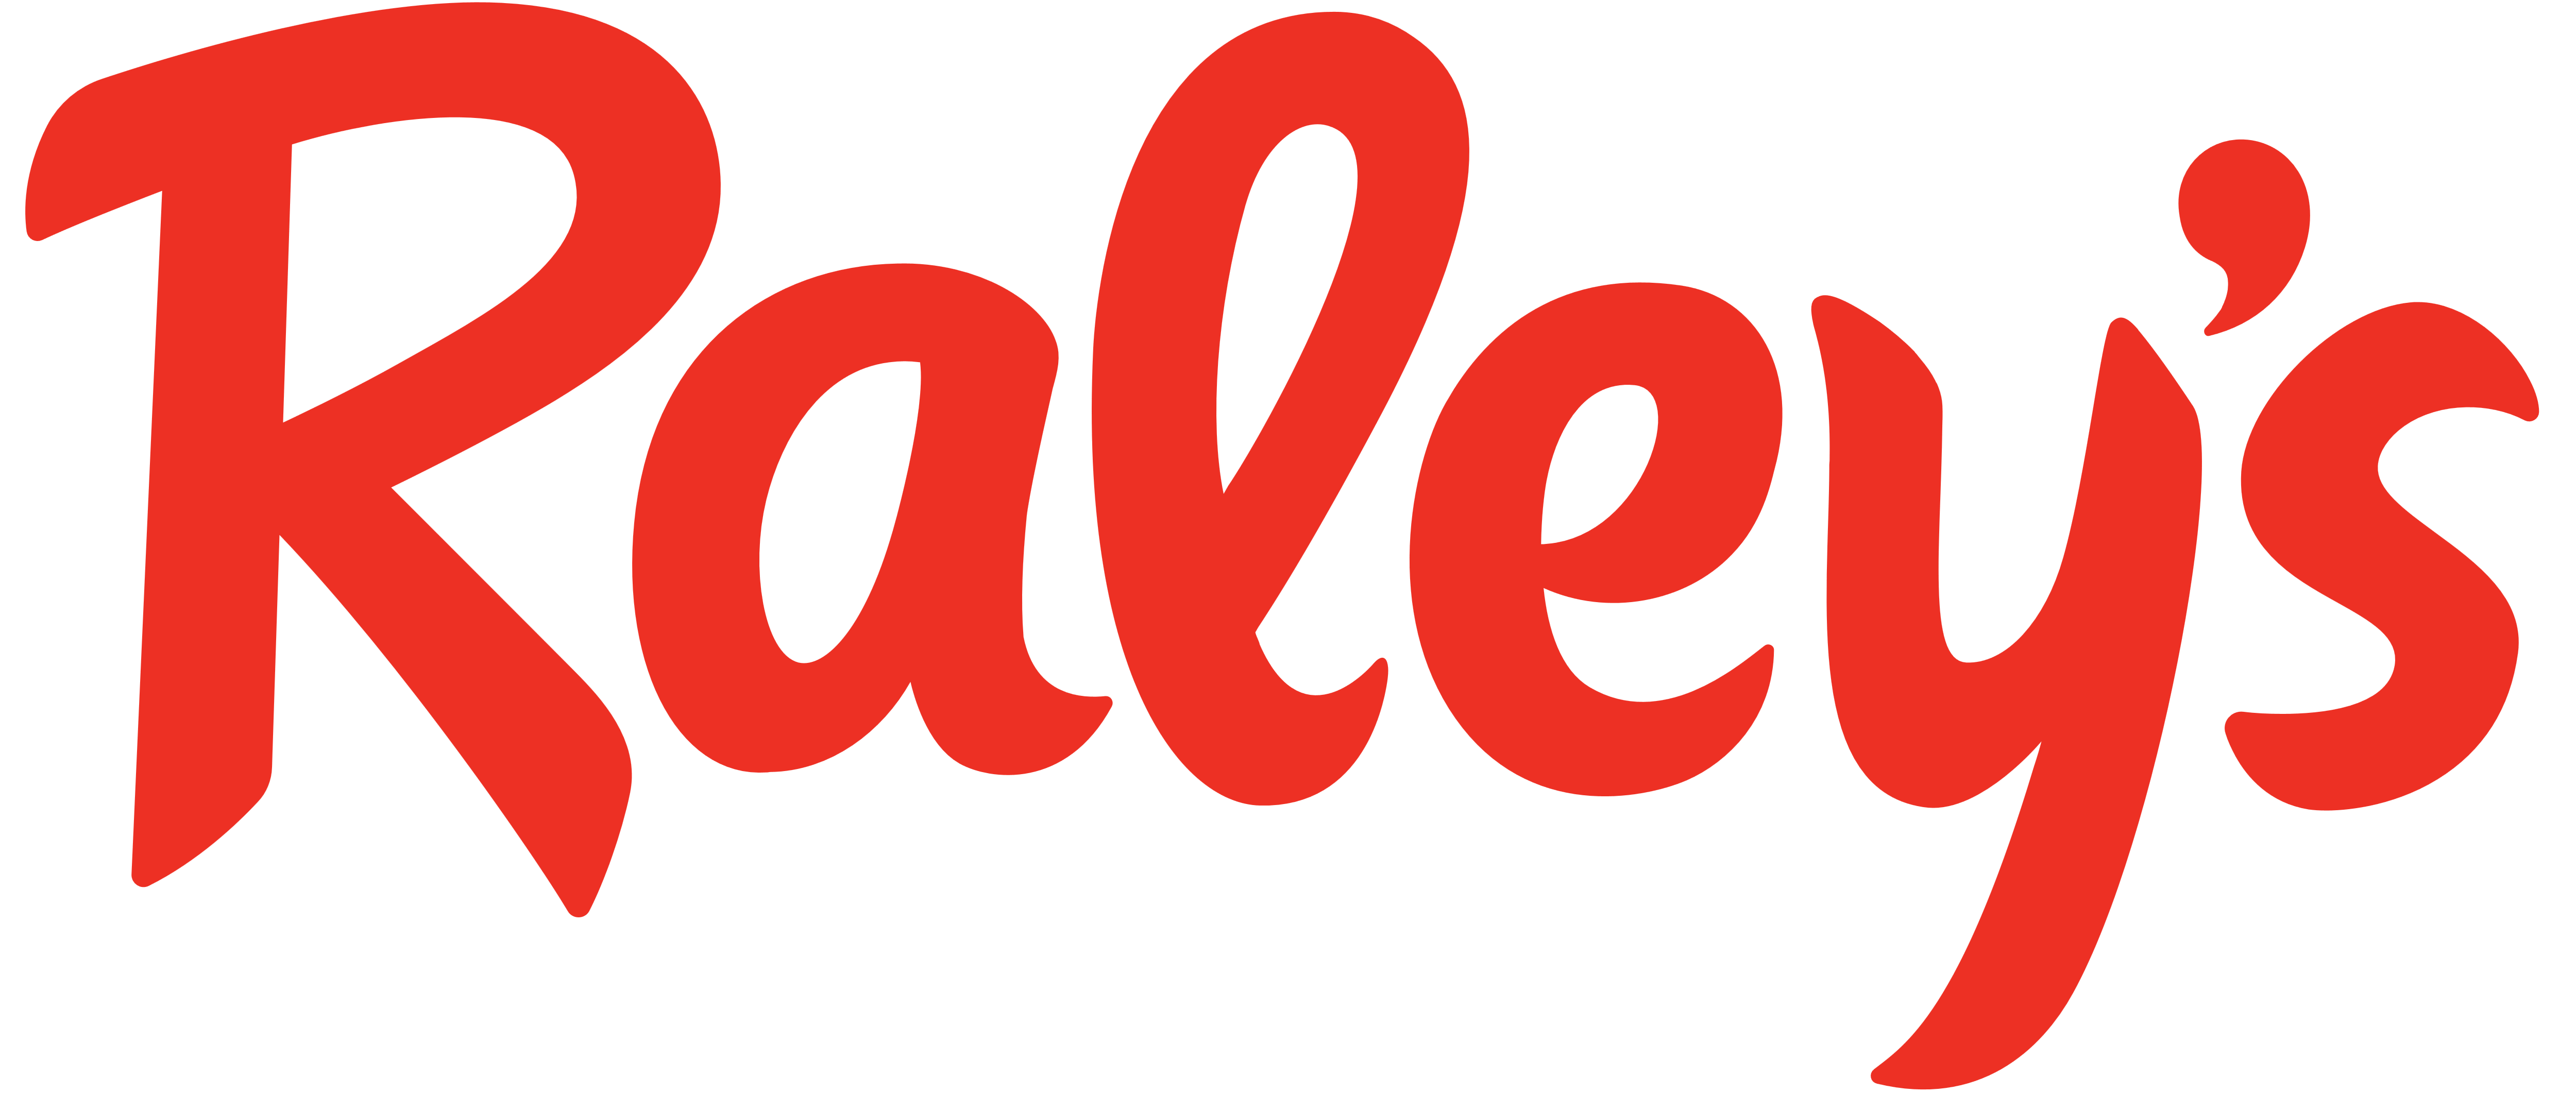 Raley's Logo - Raley's – Logos Download